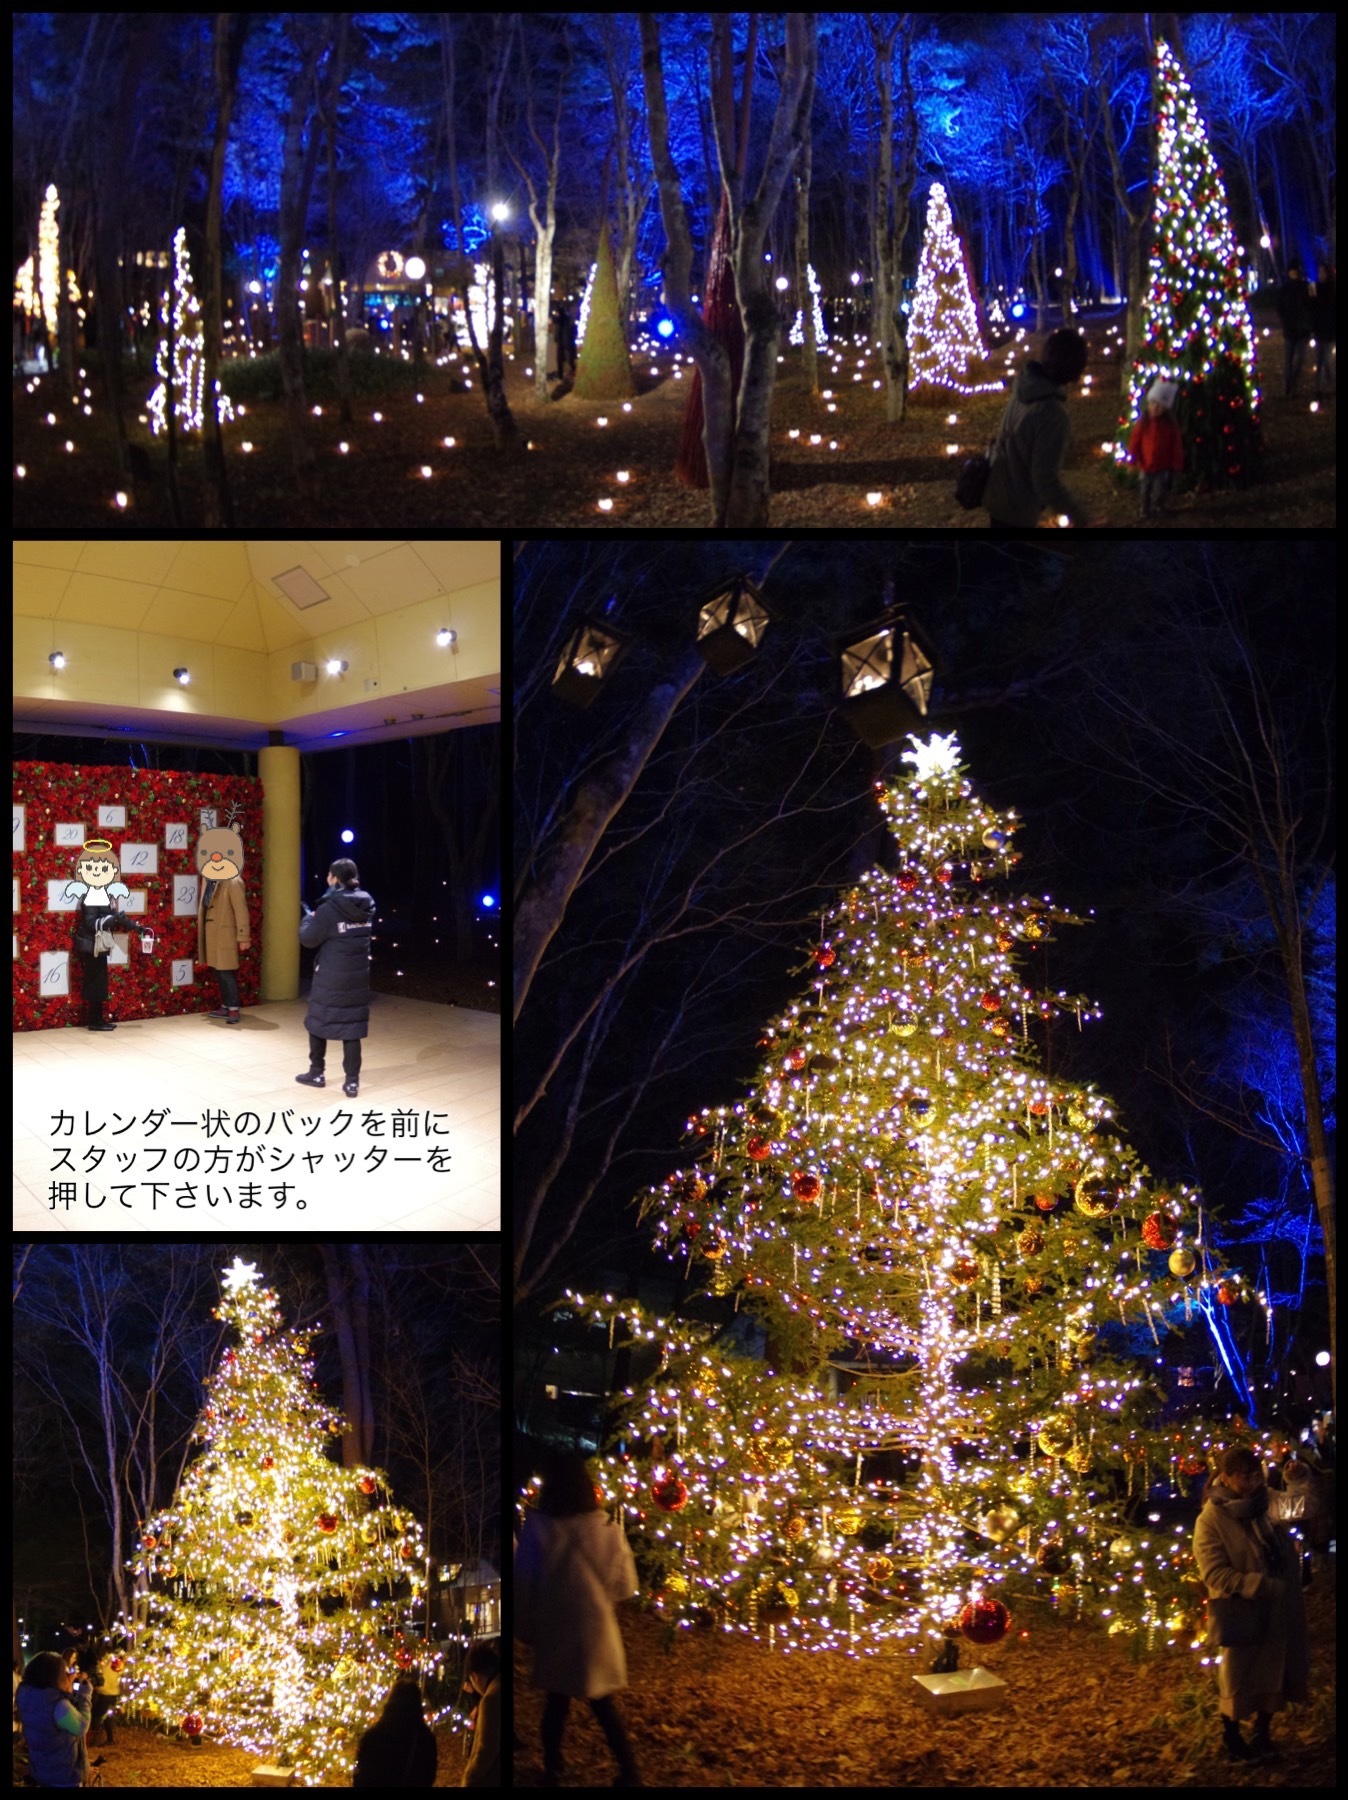 星のや軽井沢 ホテルブレストンコート 軽井沢高原教会 クリスマスキャンドルナイト